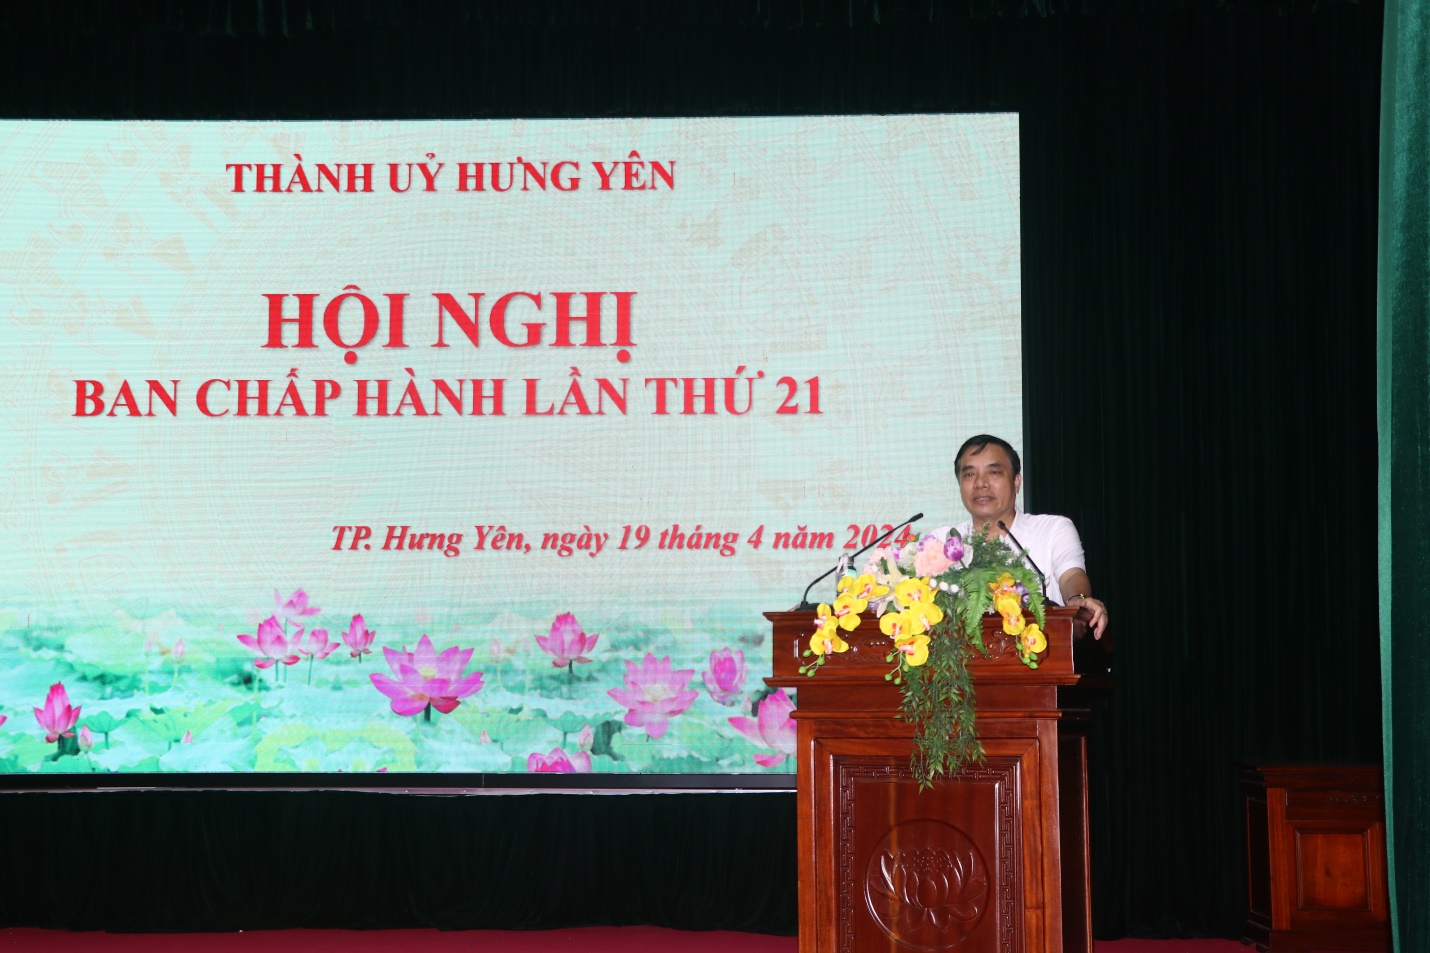 Thành ủy Hưng Yên tổ chức Hội nghị Ban Chấp hành Đảng bộ lần thứ 21